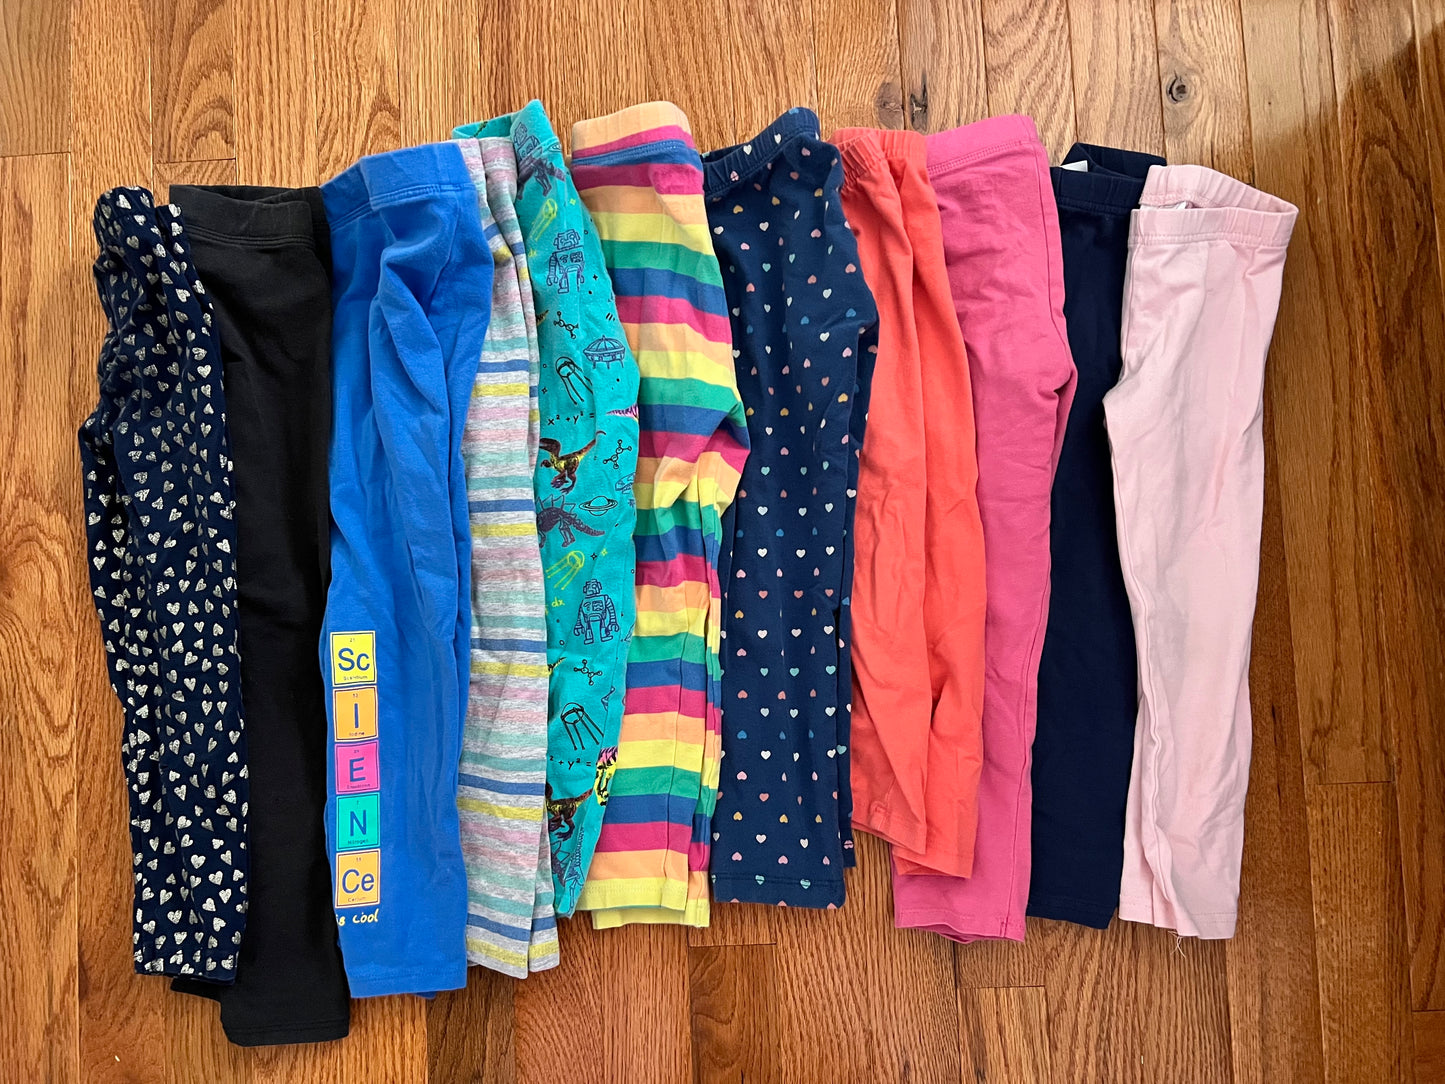 Girls legging bundle- size 2-4t (11 pairs)